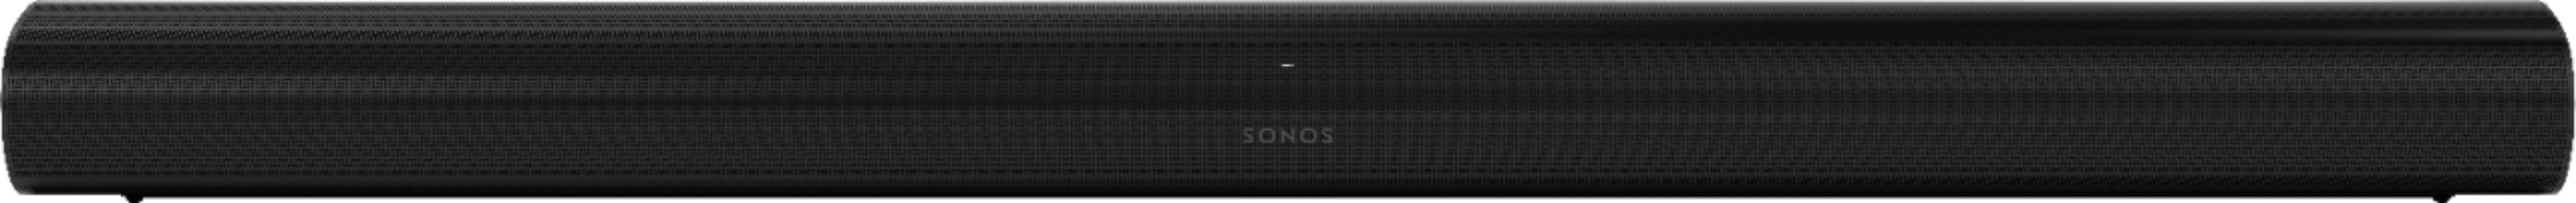 Sonos Arc 5.1.2 Home Theater Bundle (Black) Includes Sonos Arc